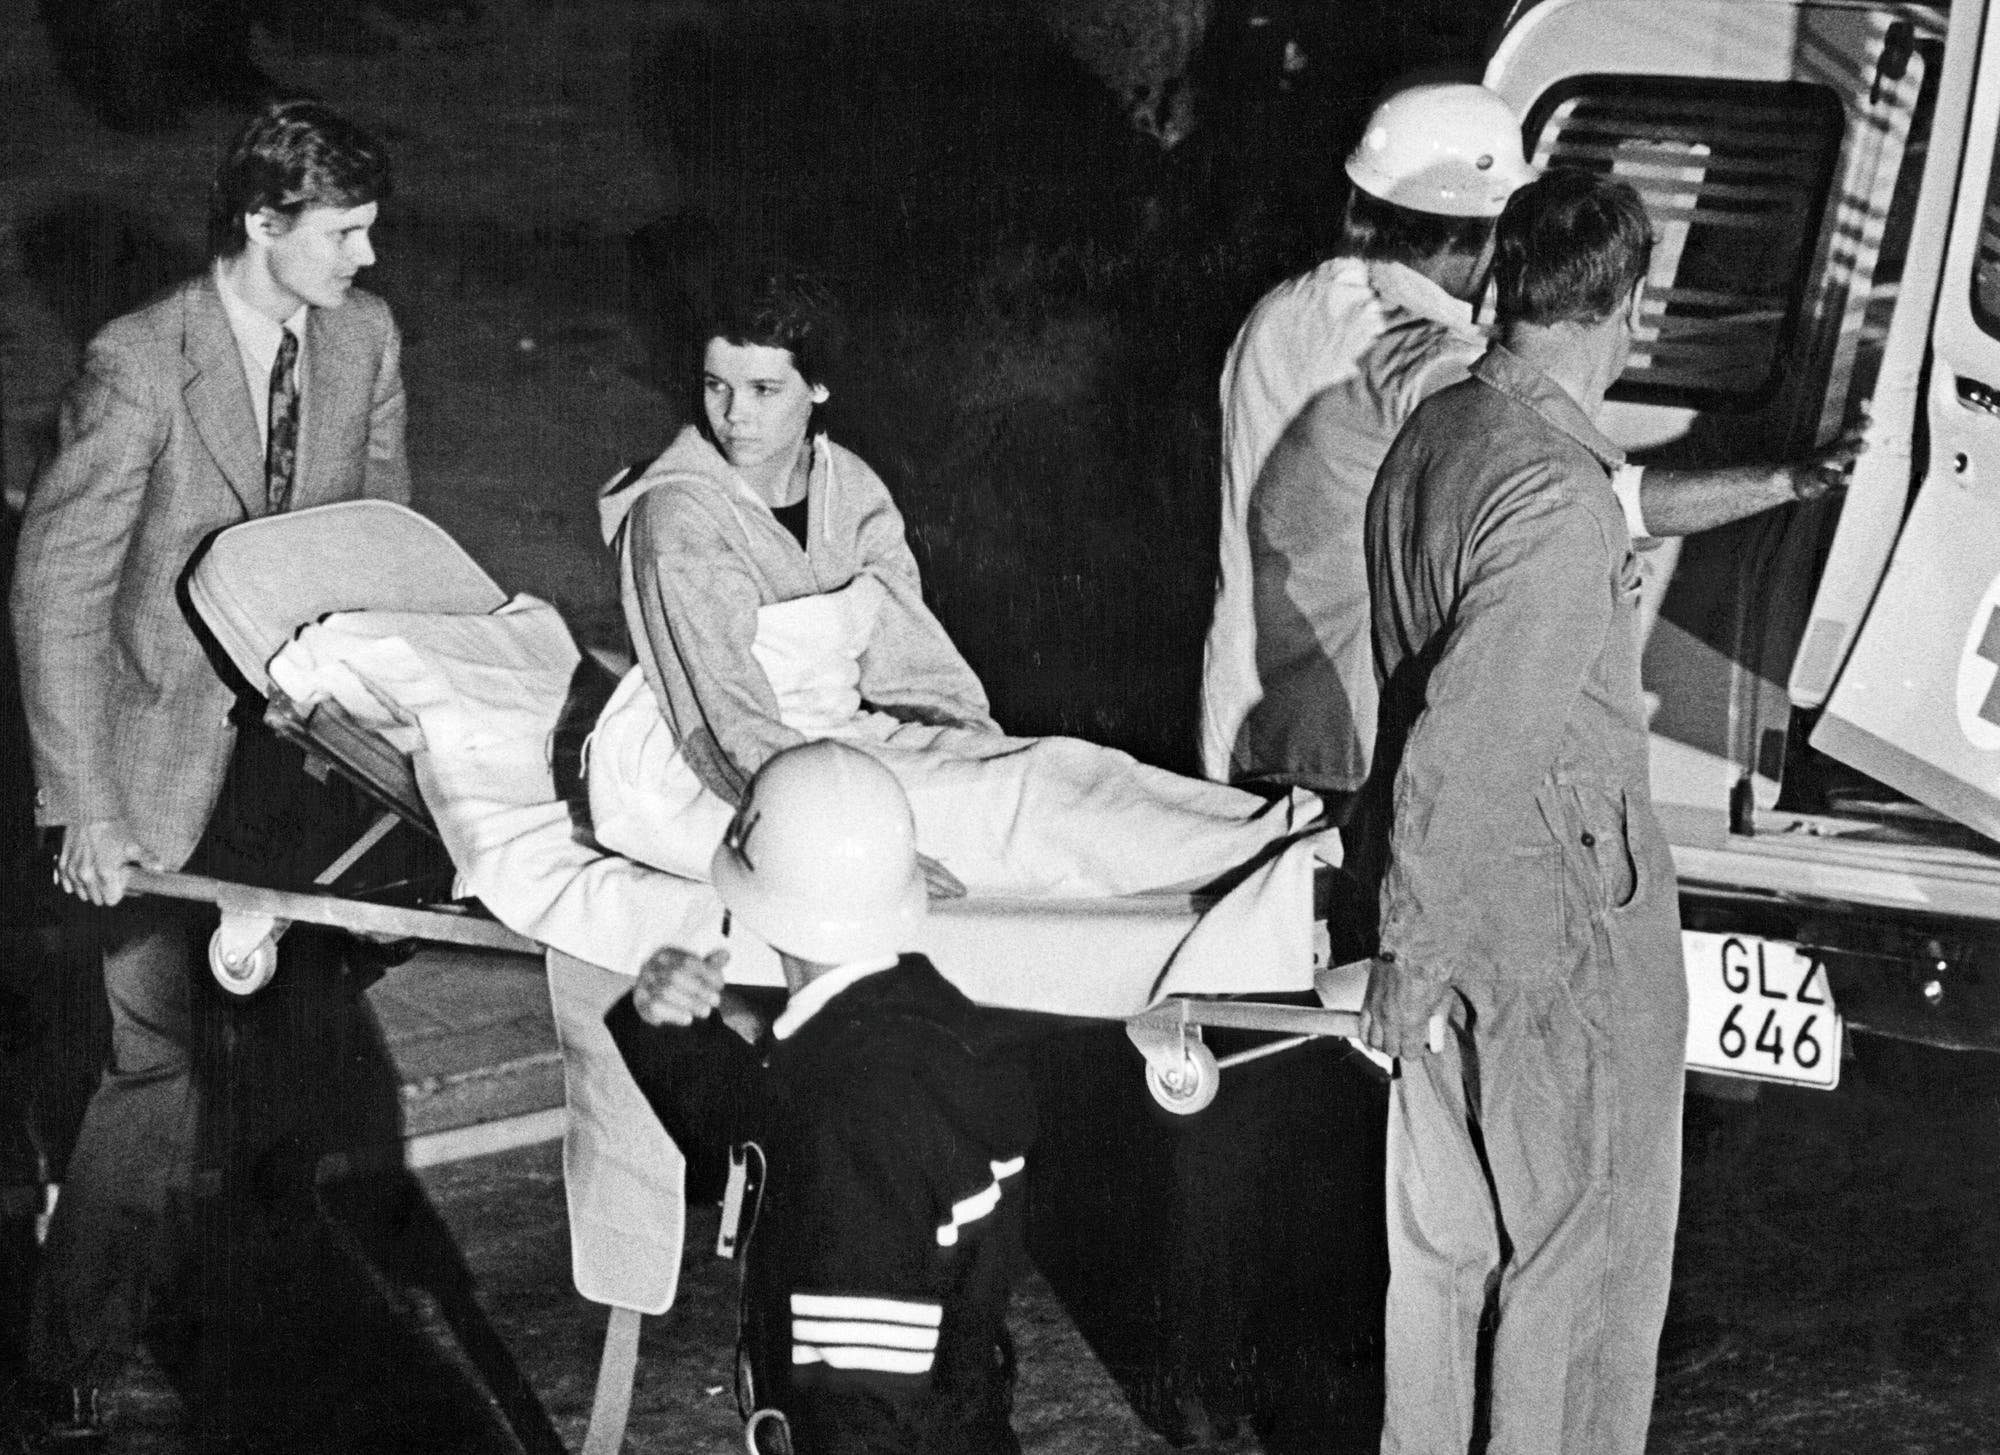 S/W-Aufnahme: Junge Frau wird auf einer Trage zum Krankenwagen gebracht, sie schaut zurück in die Richtung, aus der sie gekommen sind.